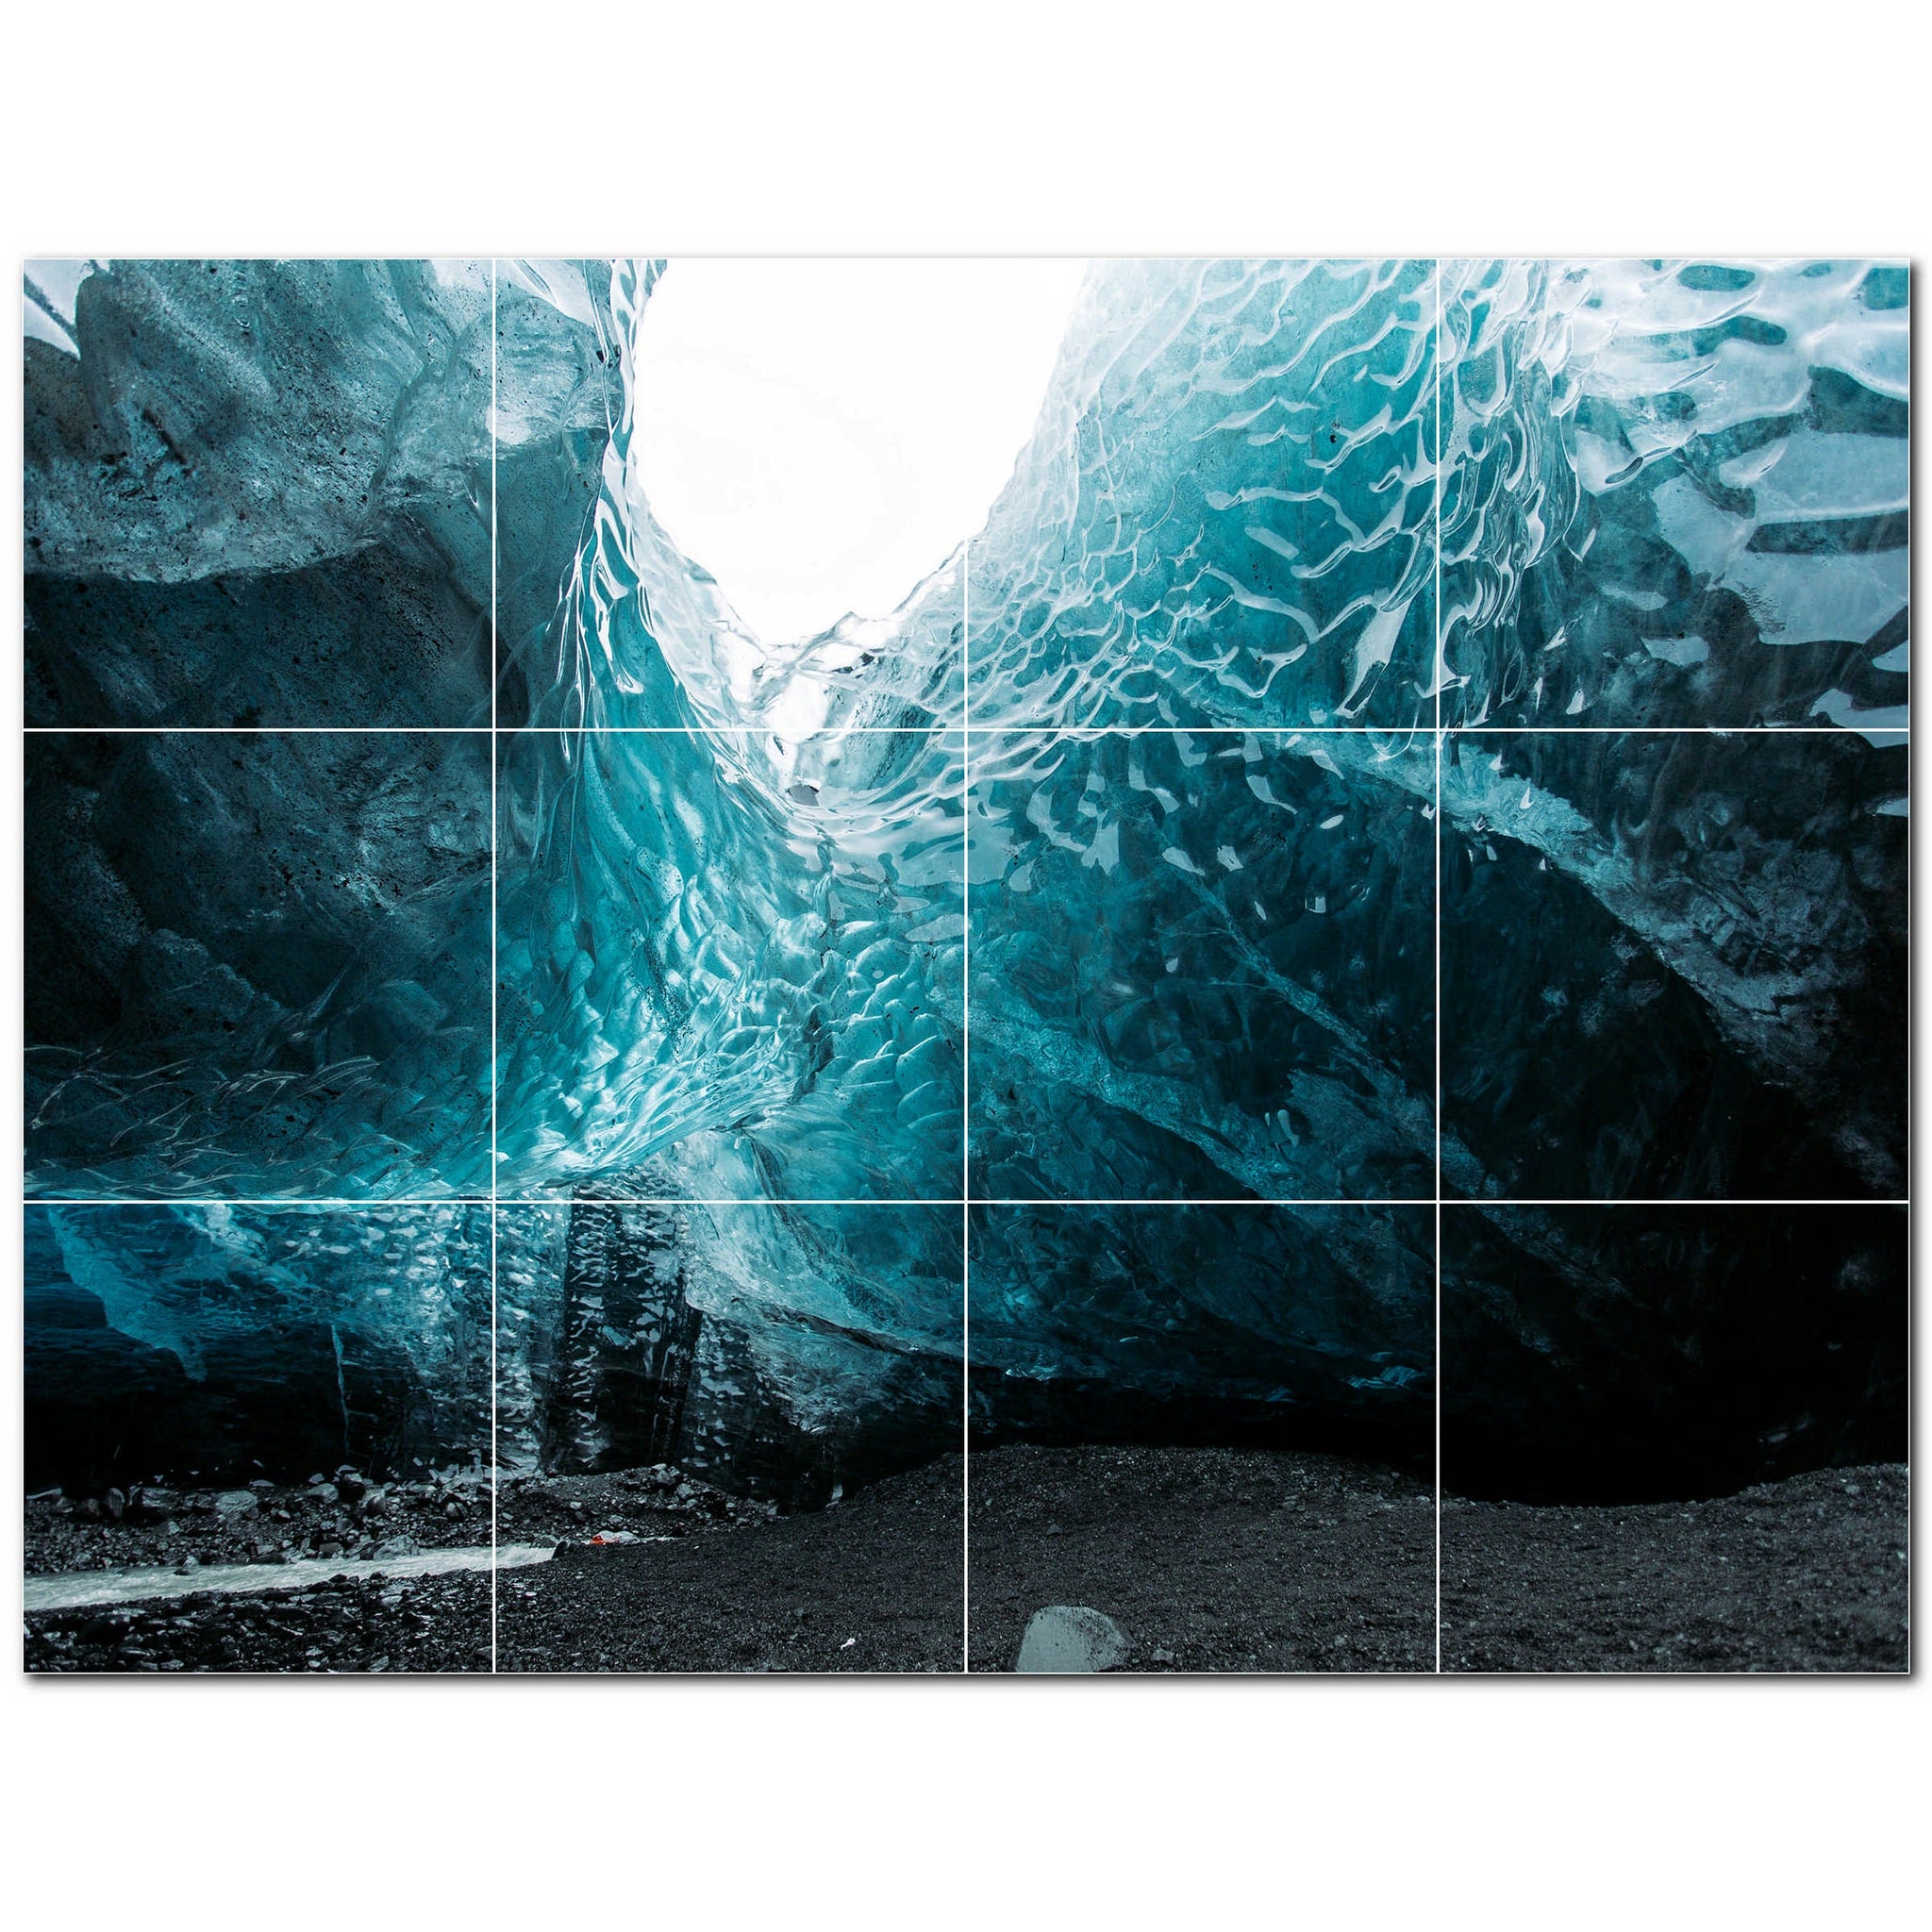 glacier ceramic tile wall mural kitchen backsplash bathroom shower p500737